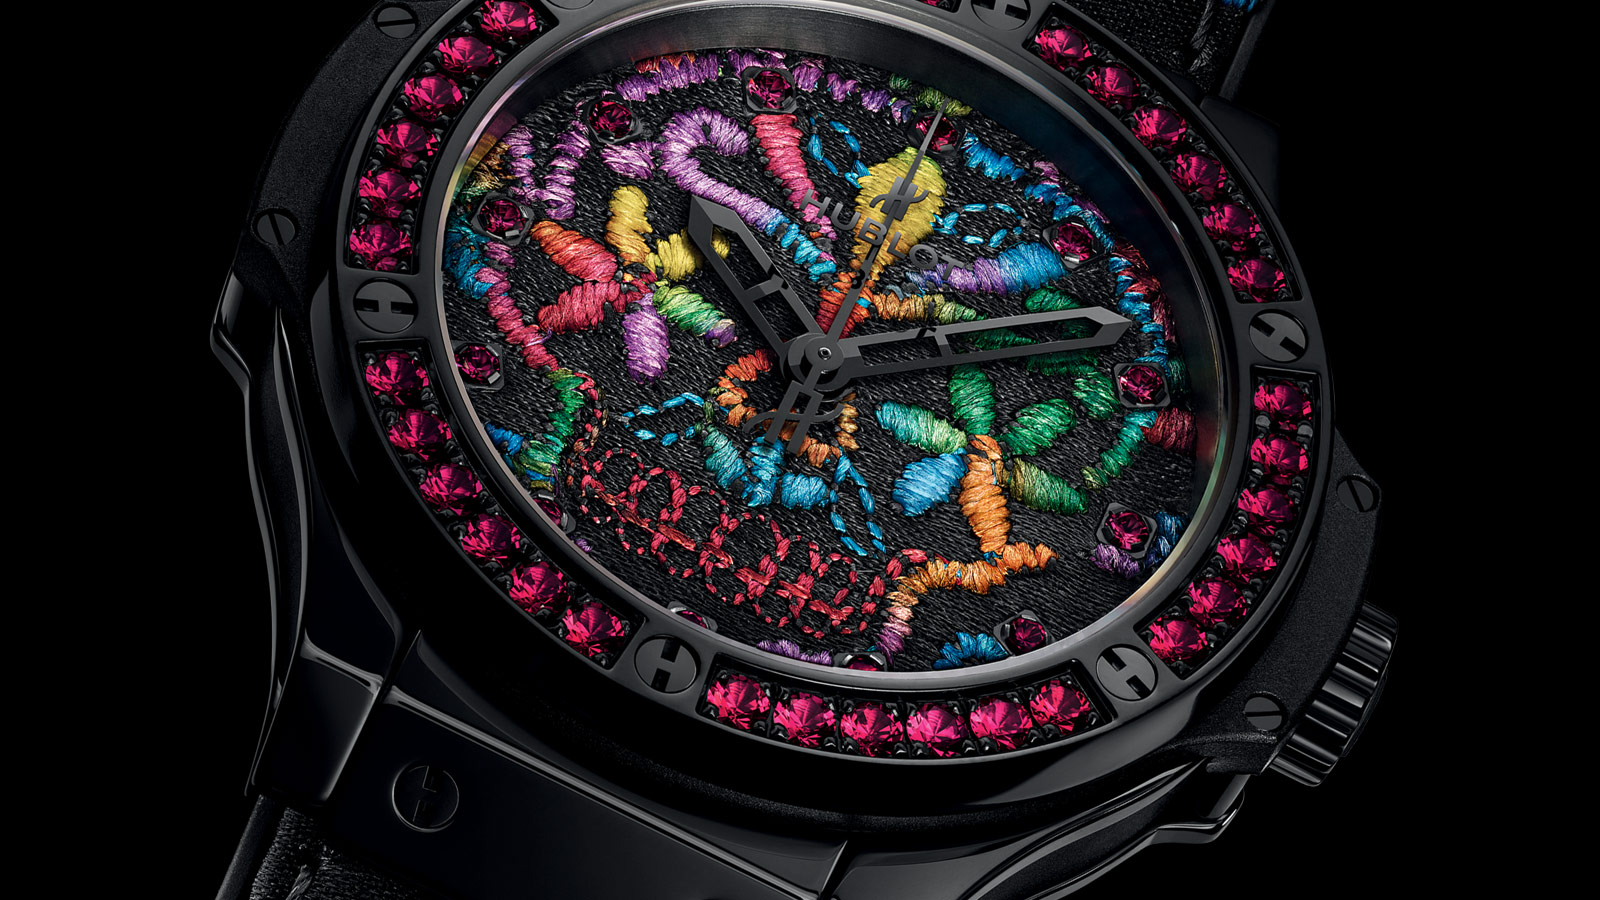 zegarek hublot - jeden z najbardziej niezwykłych zegarków wprowadzonych na rynek w 2016 r.